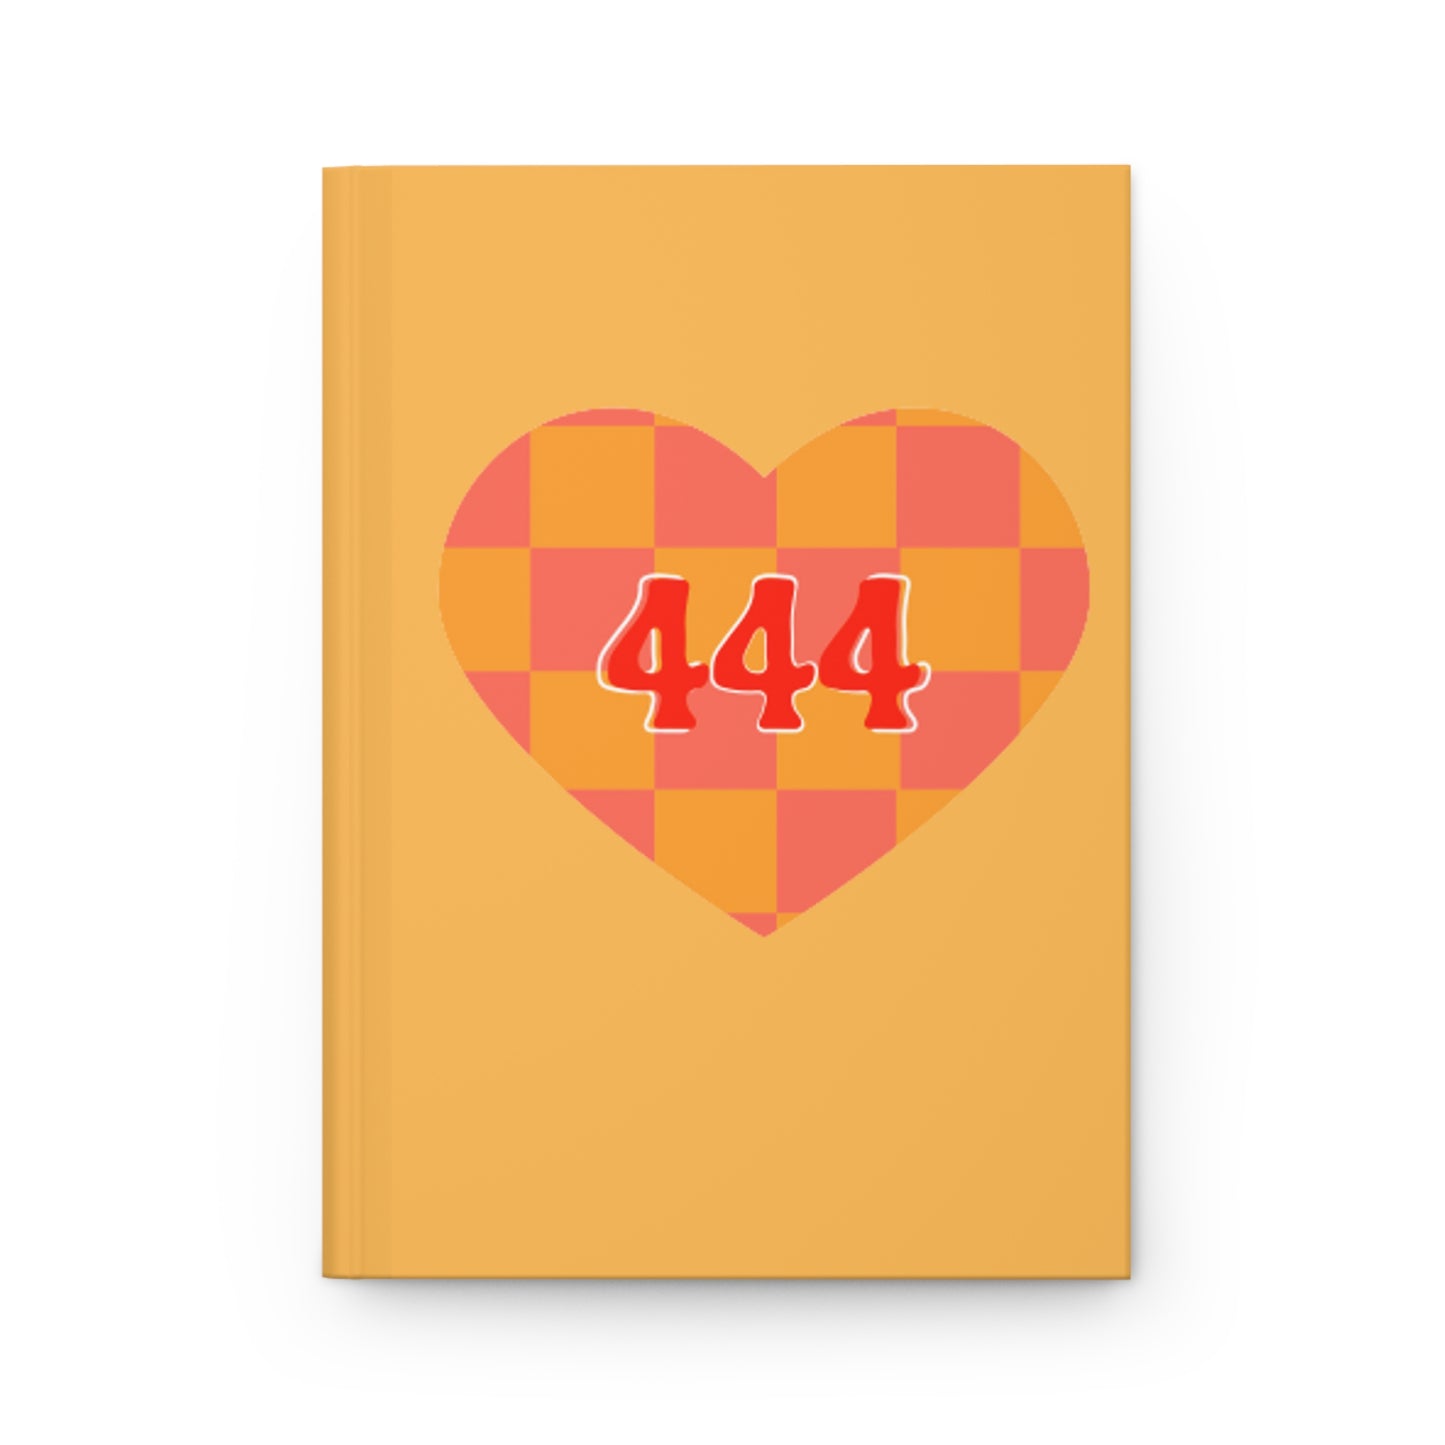 444 Journal